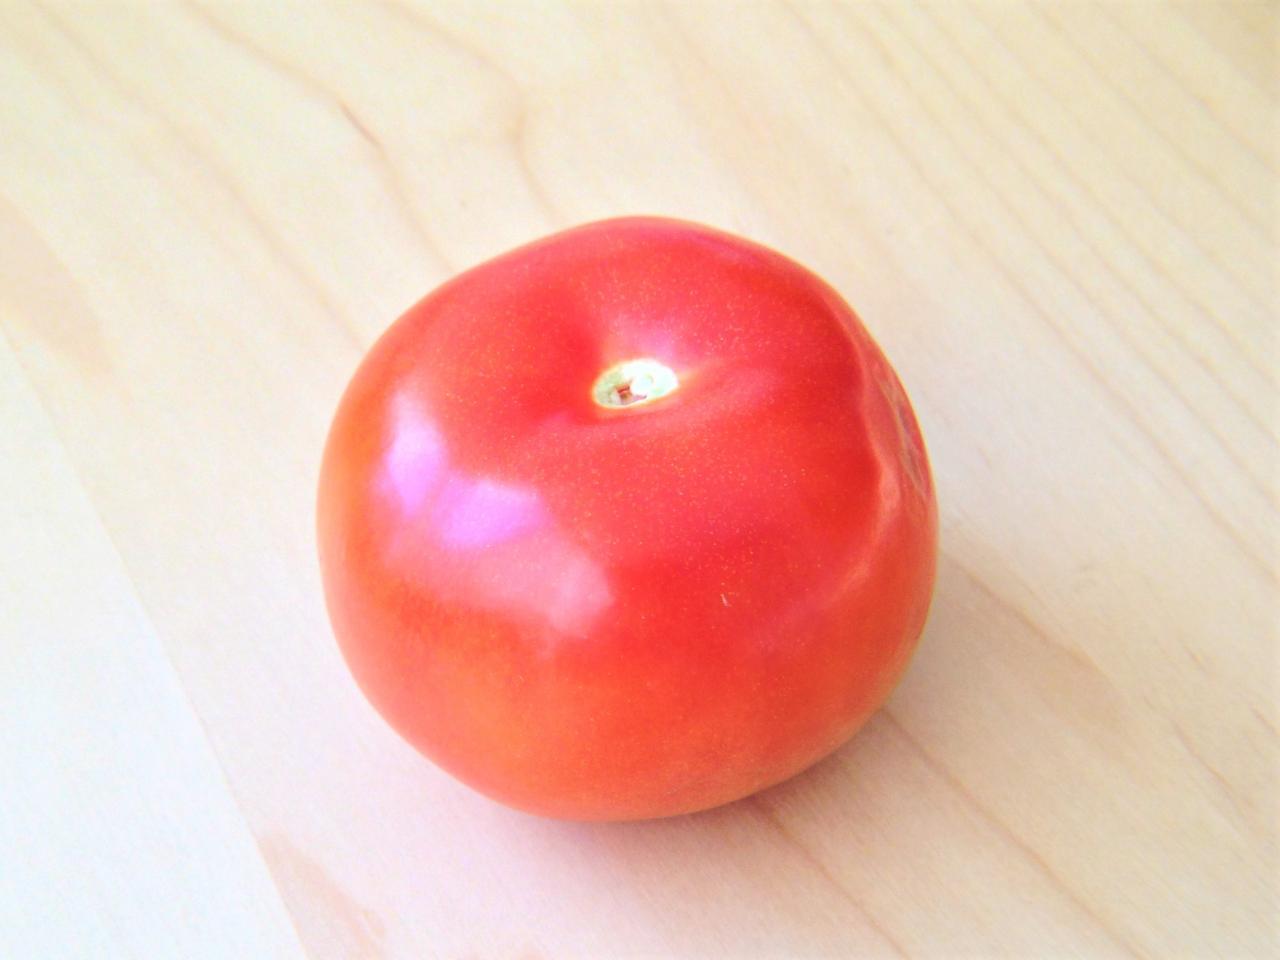 Cách trang trí món ăn bằng cà chua và cách bày với dưa hấu cực đẹp